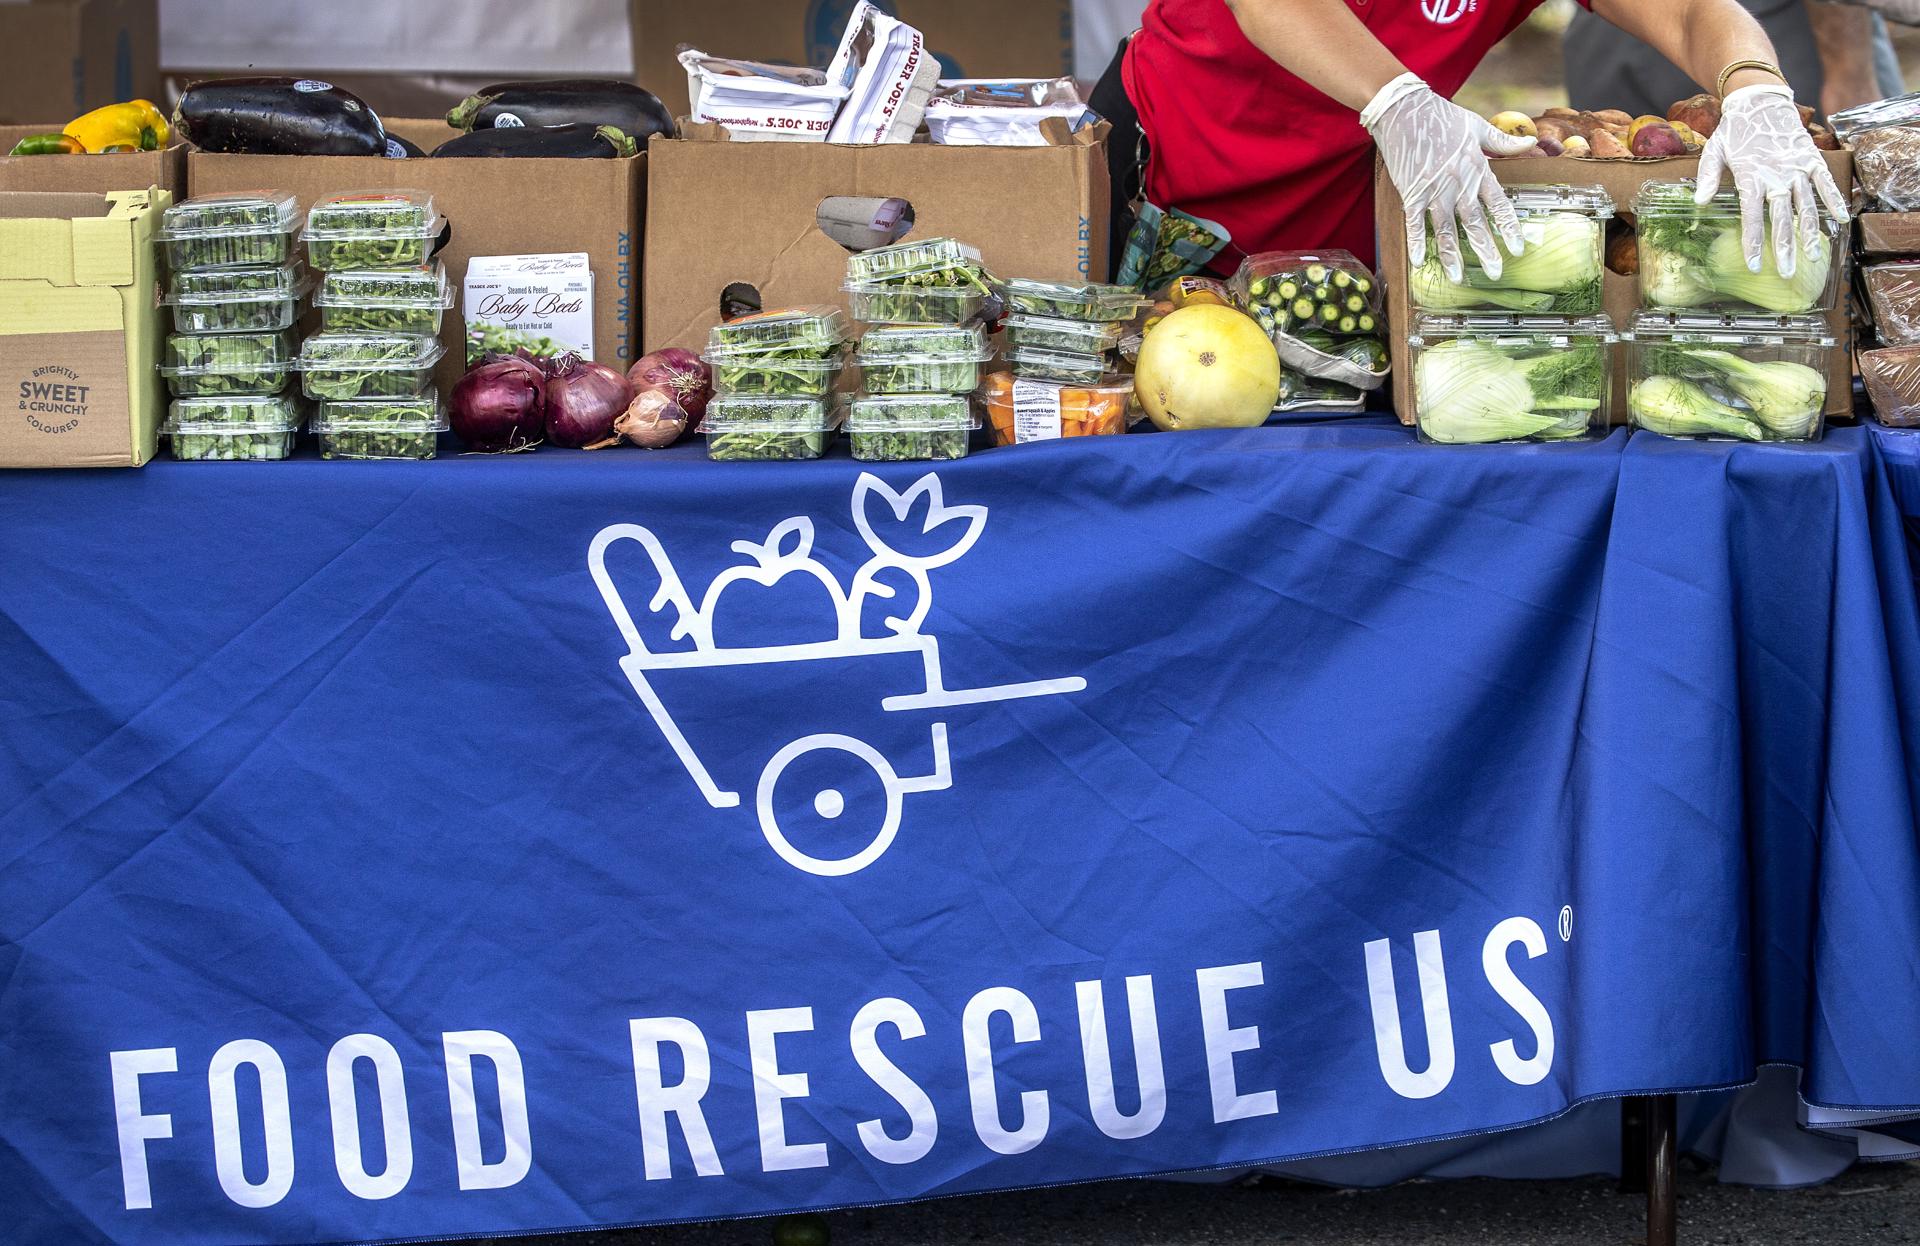 Voluntarios locales fueron registrados este sábado, 25 de marzo, al trabajar con la fundación Food Rescue US, al recolectar y compartir alimentos con personas necesitadas, en la Iglesia de el Nazareno, en Miami (Florida, EE.UU.). EFE/Cristóbal Herrera
